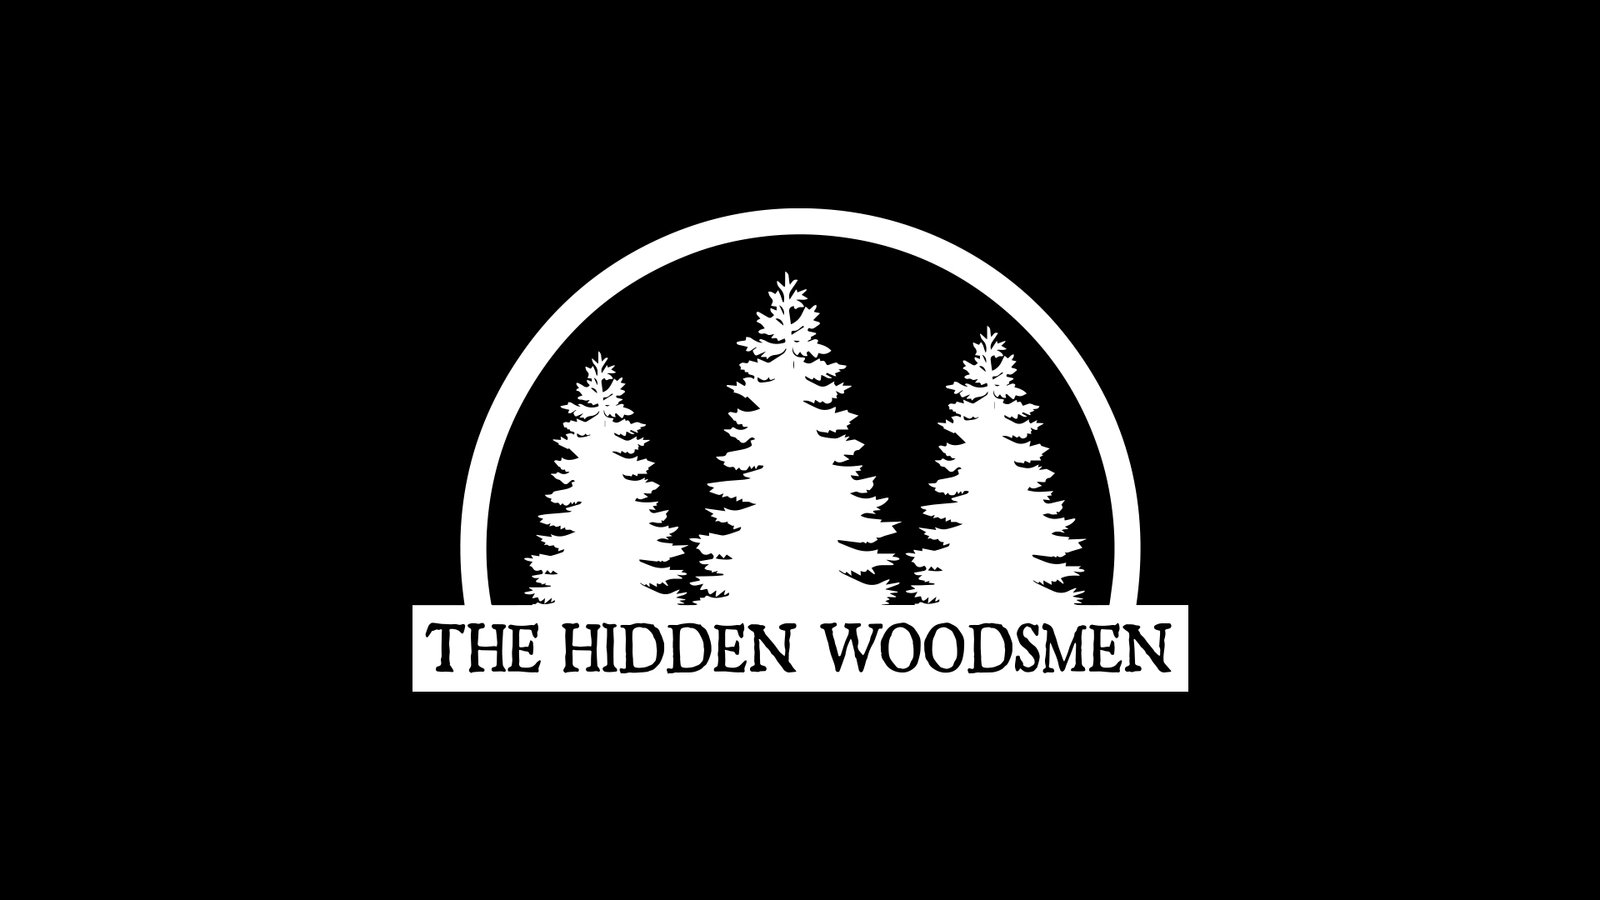 The Hidden Woodsmen – Solmos Creative